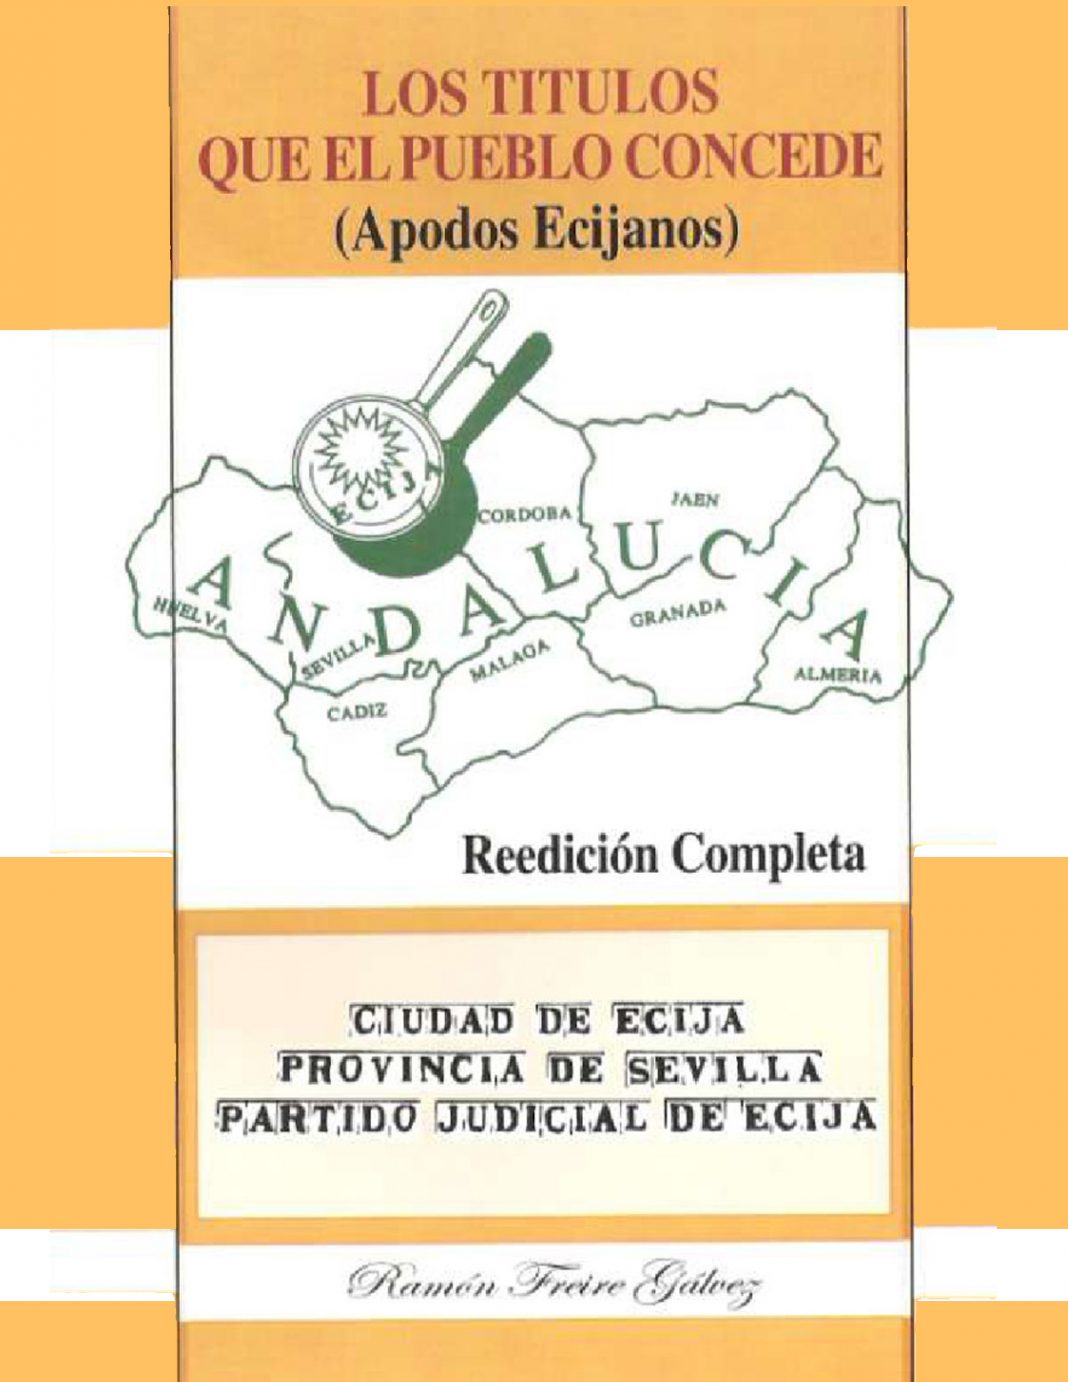 Ramón Freire readapta y distribuye gratuitamente a través de EcijaWeb.com su libro de apodos ecijanos